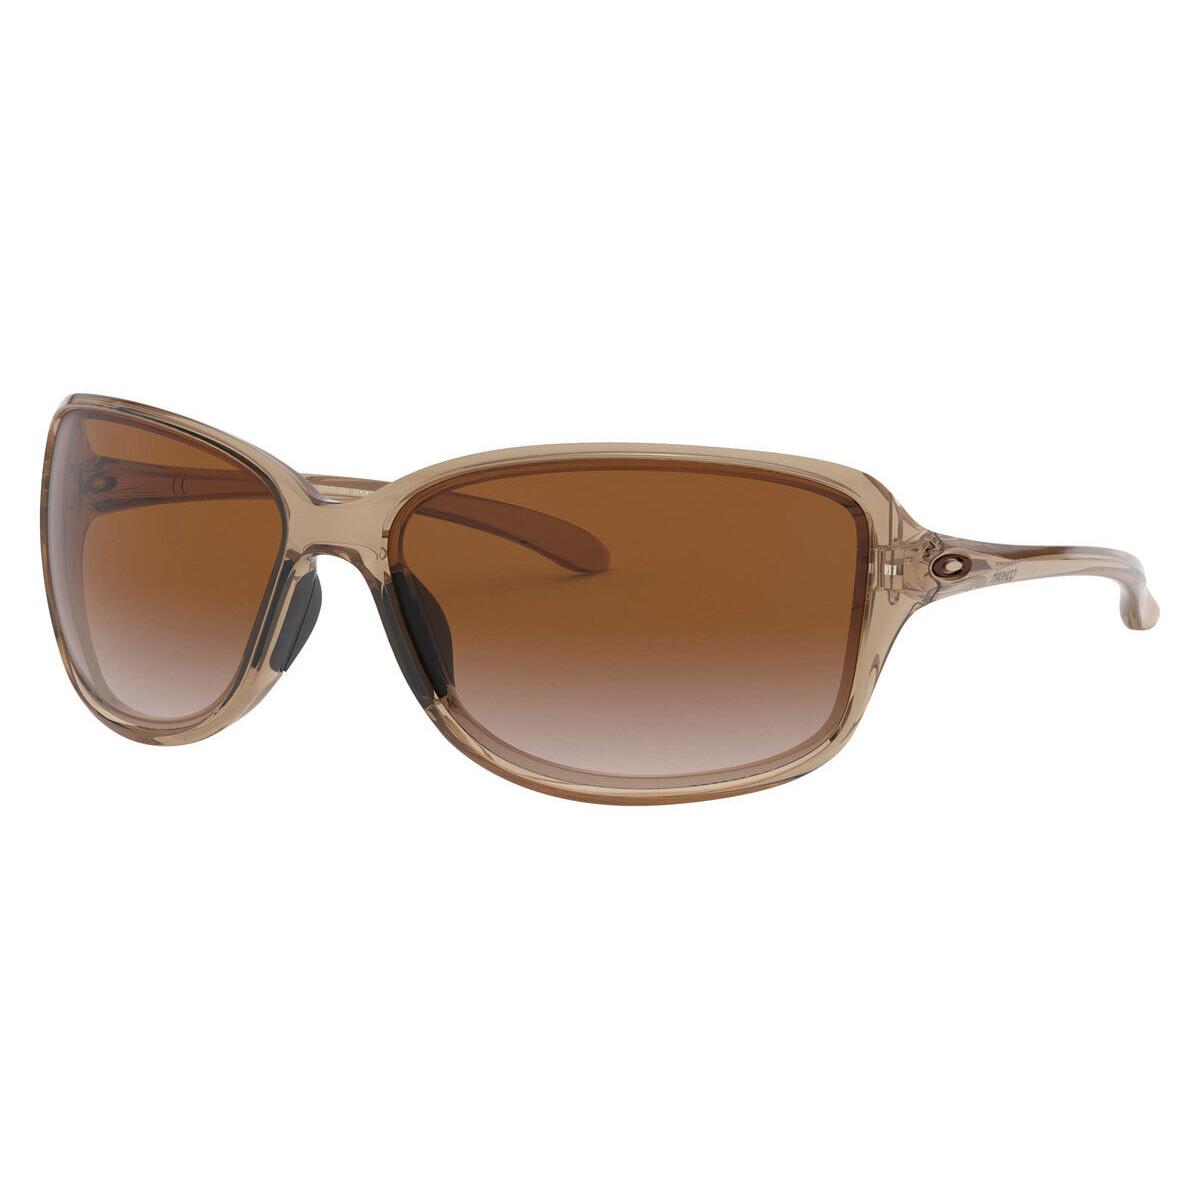 Oakley OO9301 Sunglasses Women Brown Rectangle 61mm